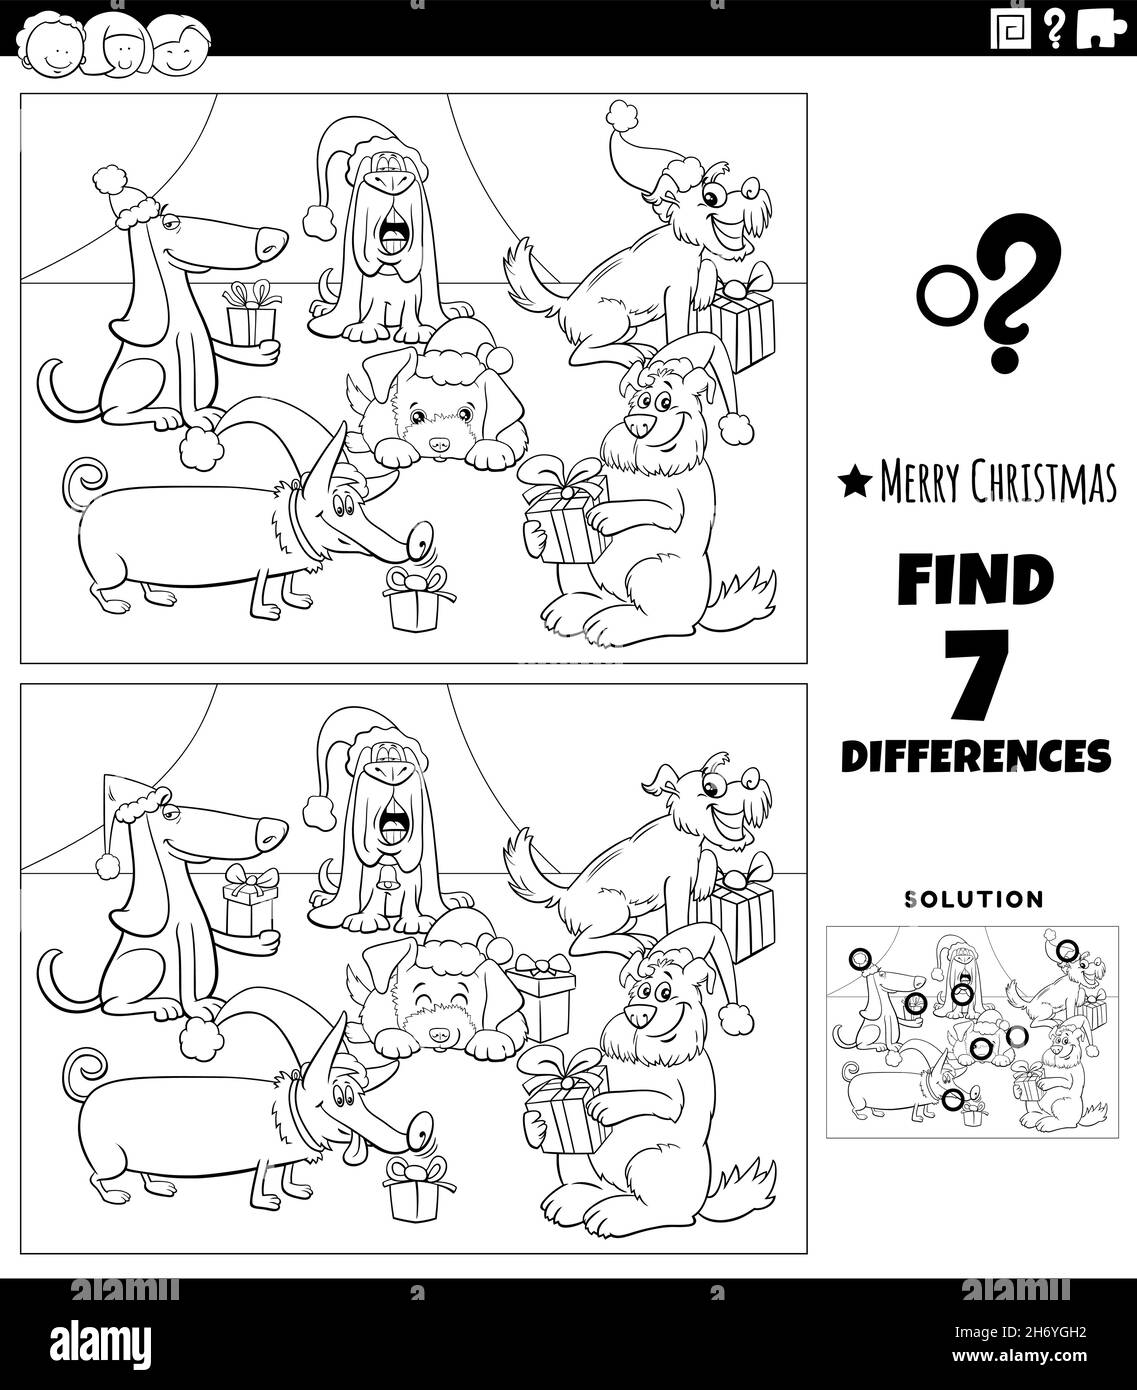 Schwarz-Weiß-Cartoon-Illustration der Suche nach Unterschieden zwischen Bildern Lernspiel für Kinder mit lustigen Hunden Zeichen auf Weihnachten tim Stock Vektor